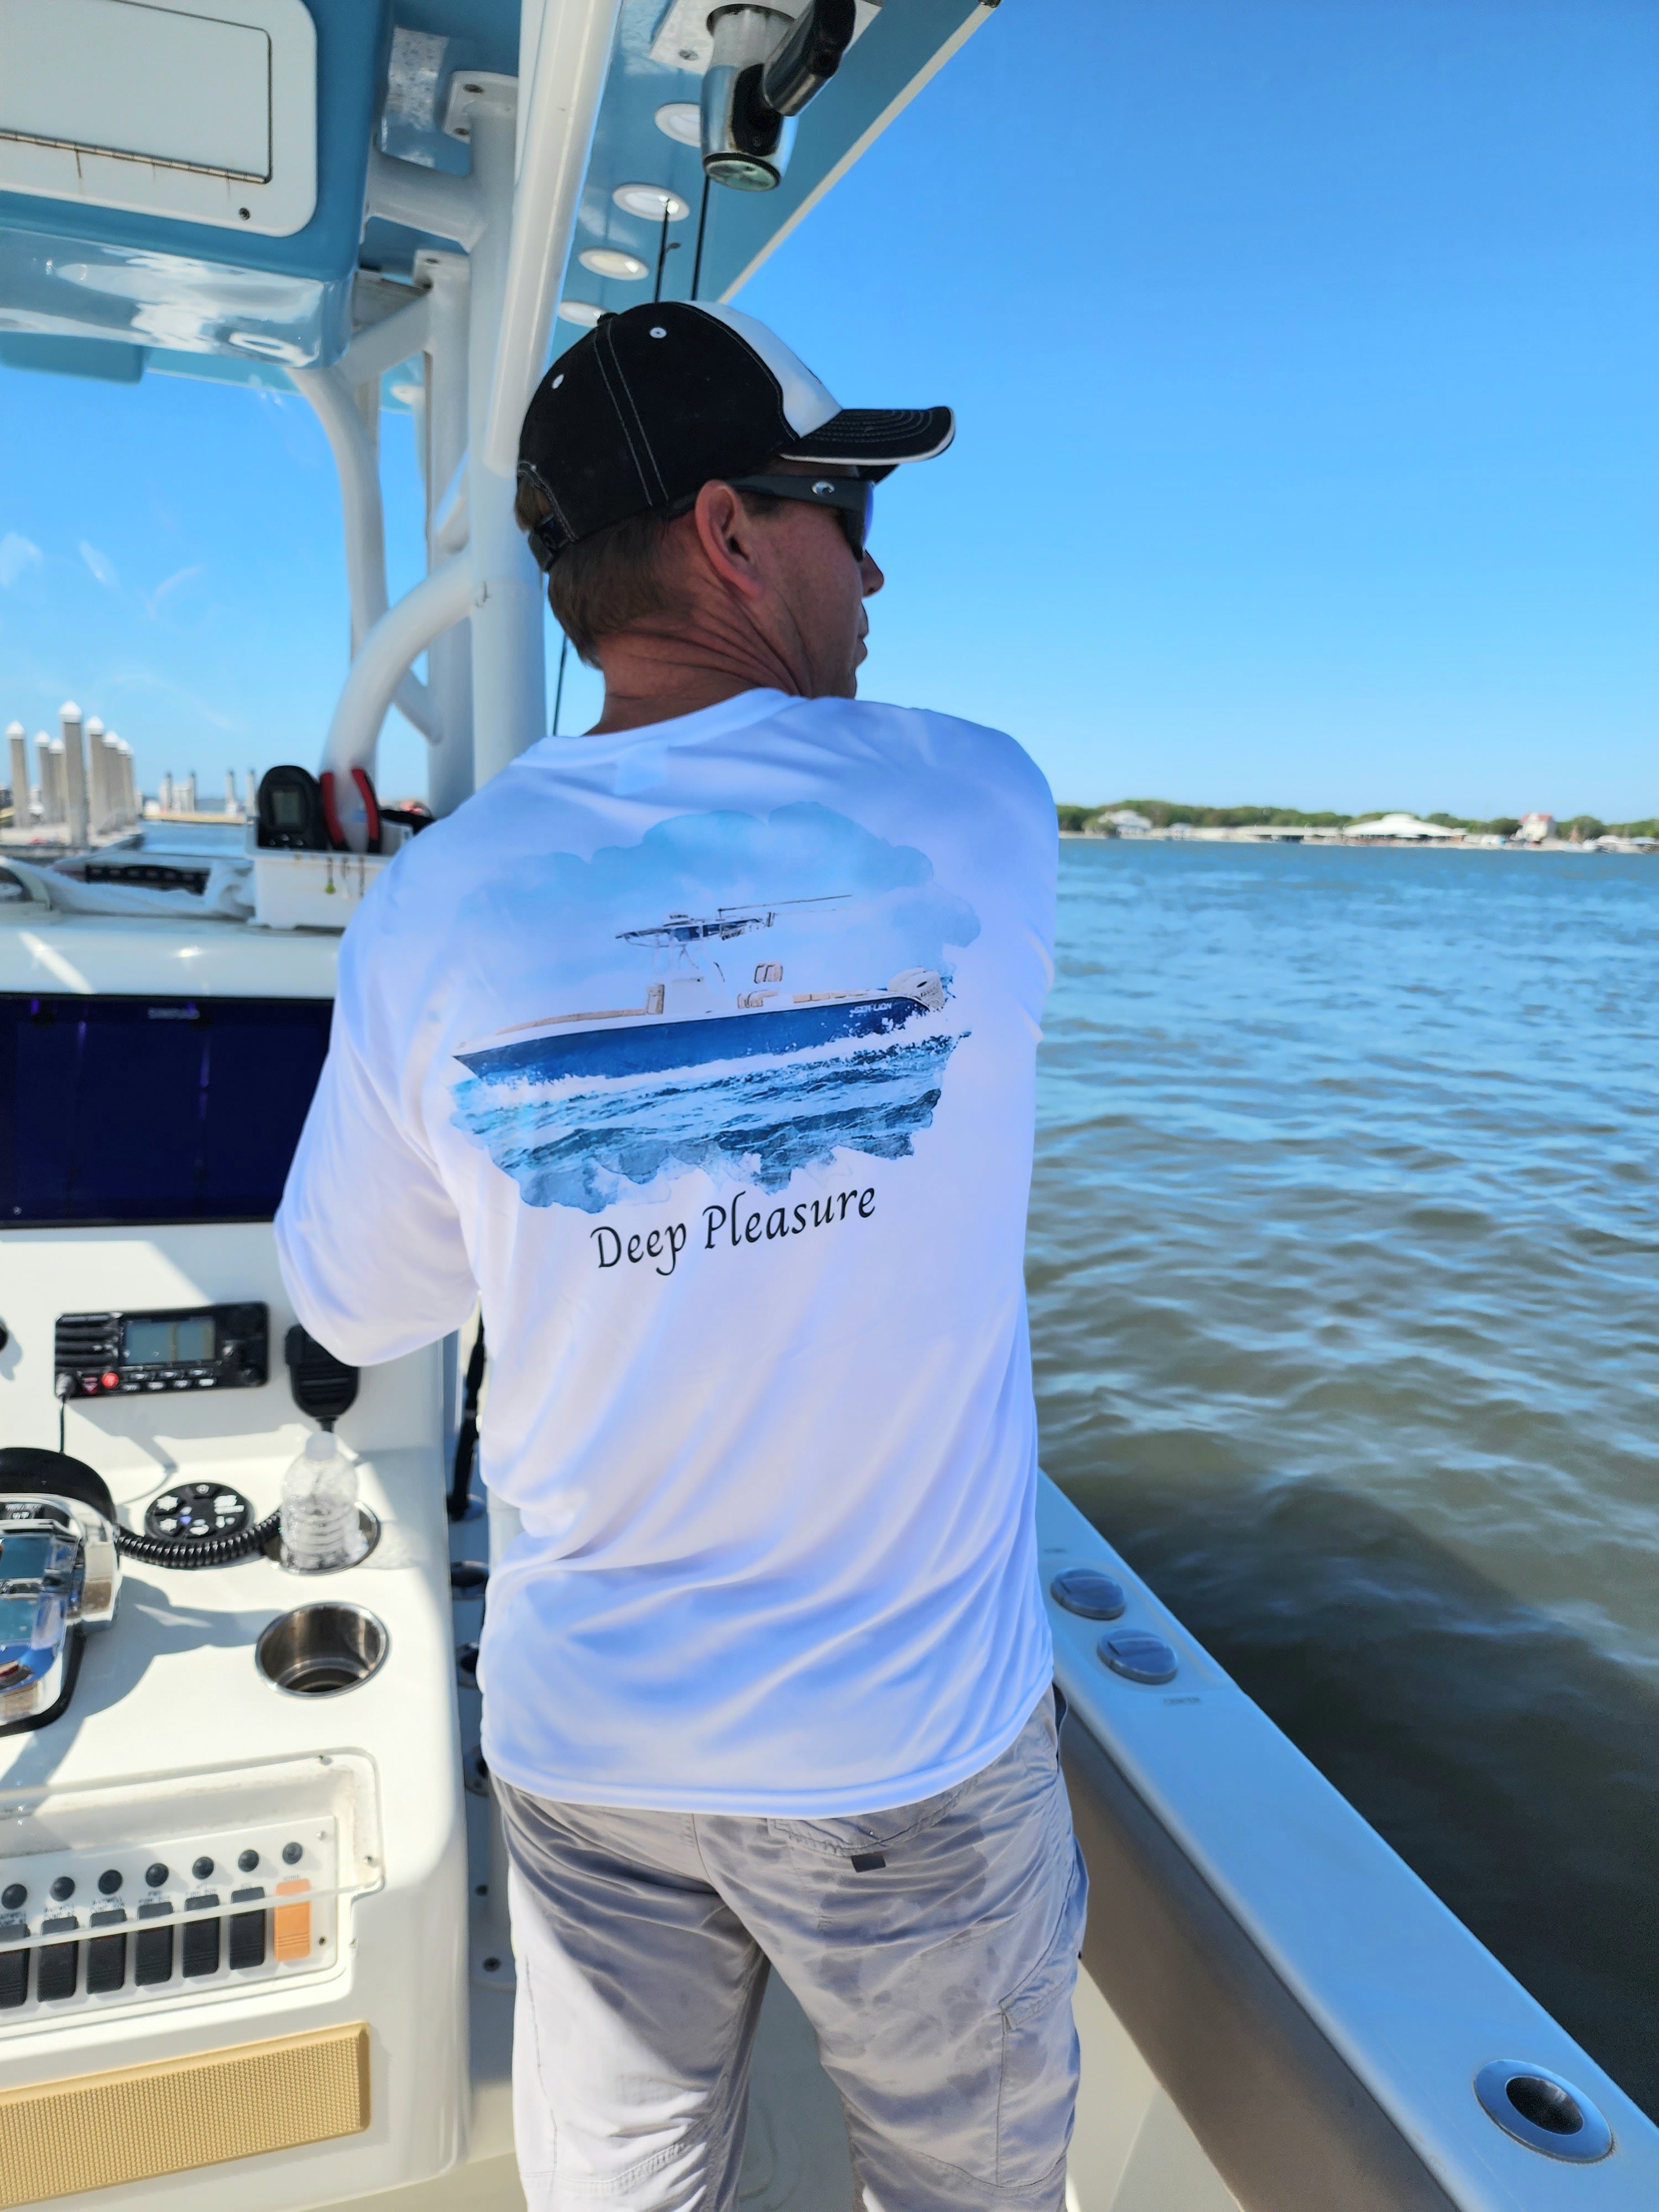 Breathable Sublimation Long Sleeve Fishing Shirts Custom